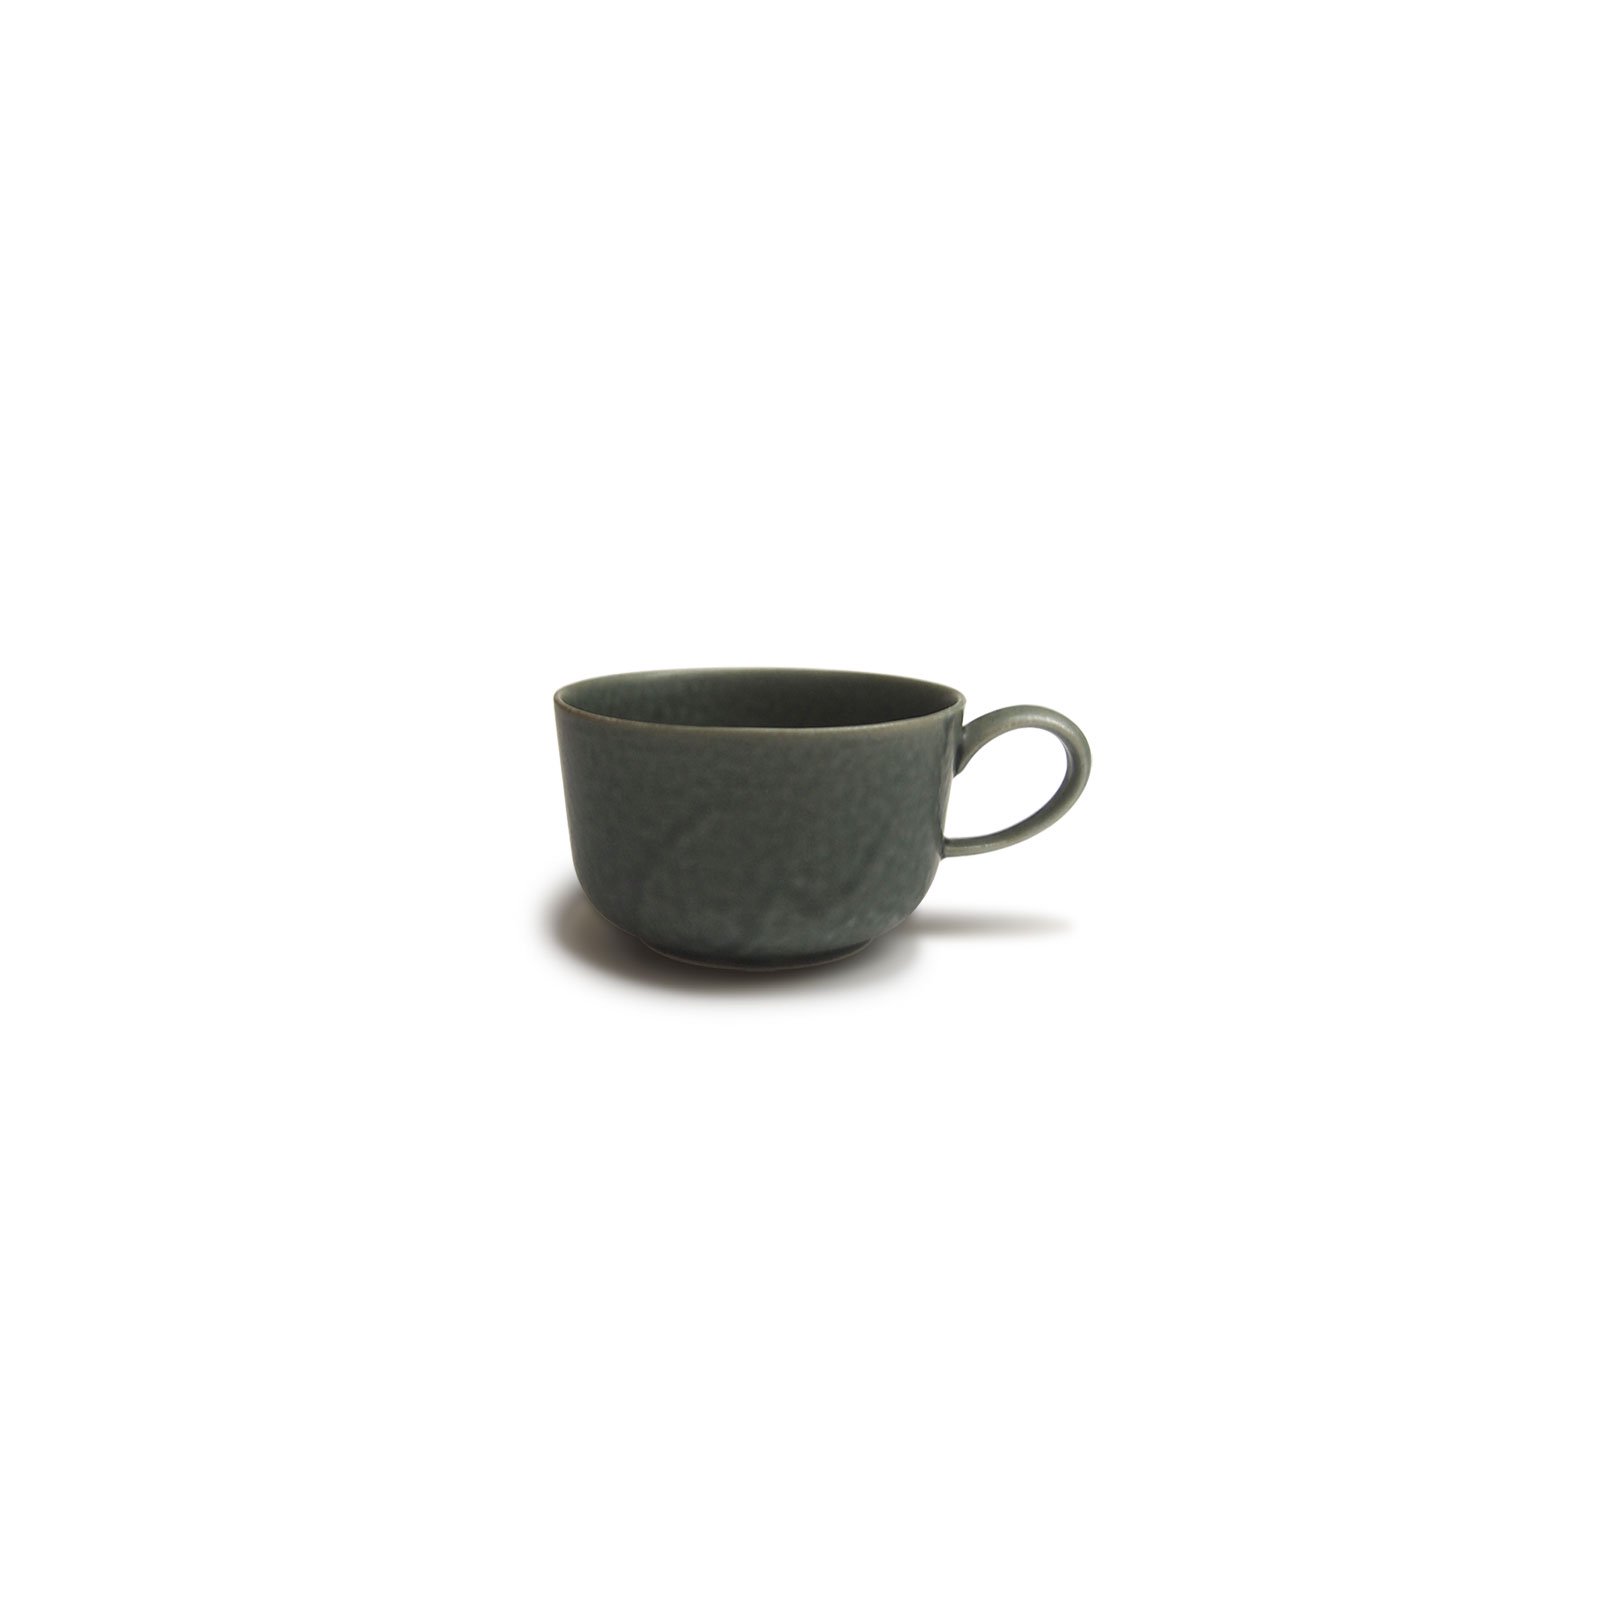 ReIRABO】Cup S (winter night gray) - yumiko iihoshi porcelain ...